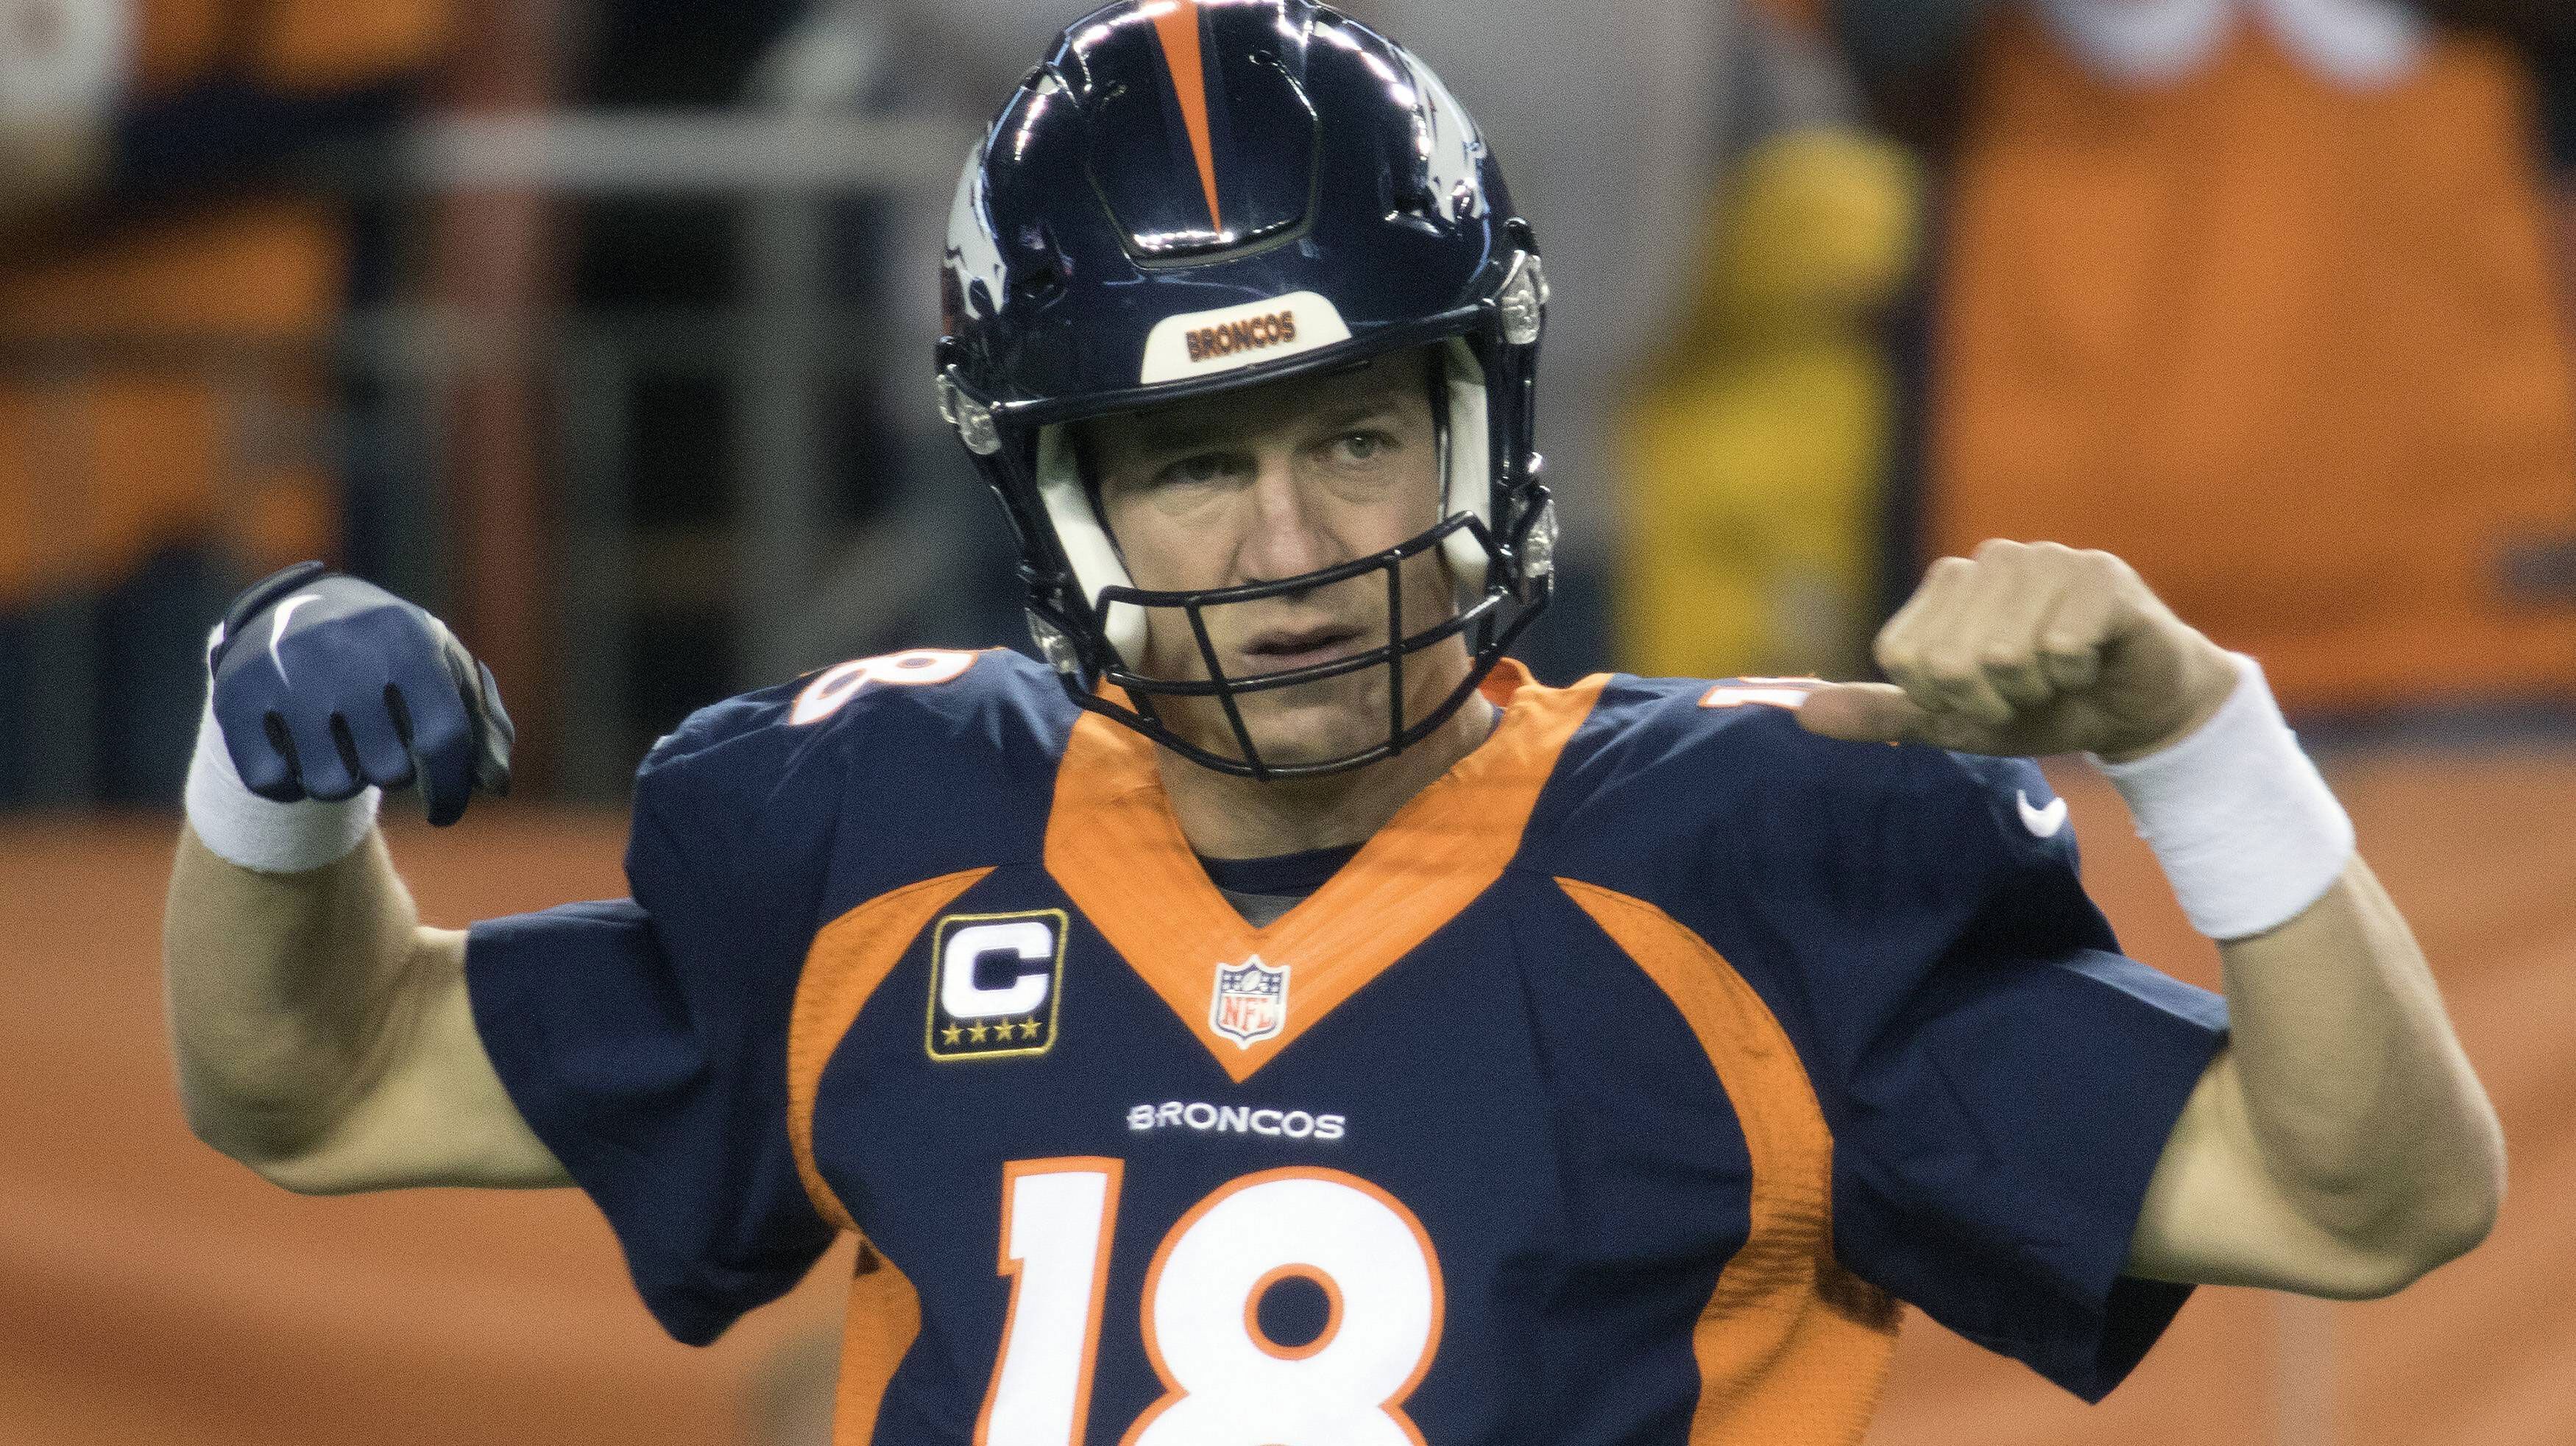 
                <strong>Manning lässt die Muskeln spielen</strong><br>
                Der 8. November 2015 kann für Peyton Manning gleich in doppelter Hinsicht ein historischer Tag werden. Der Quarterback-Legende der Denver Broncos winken in Week 9 der NFL-Saison gleich zwei Allzeit-Rekorde - und das ausgerechnet beim Auftritt bei seinem Ex-Klub Indianapolis Colts.
              